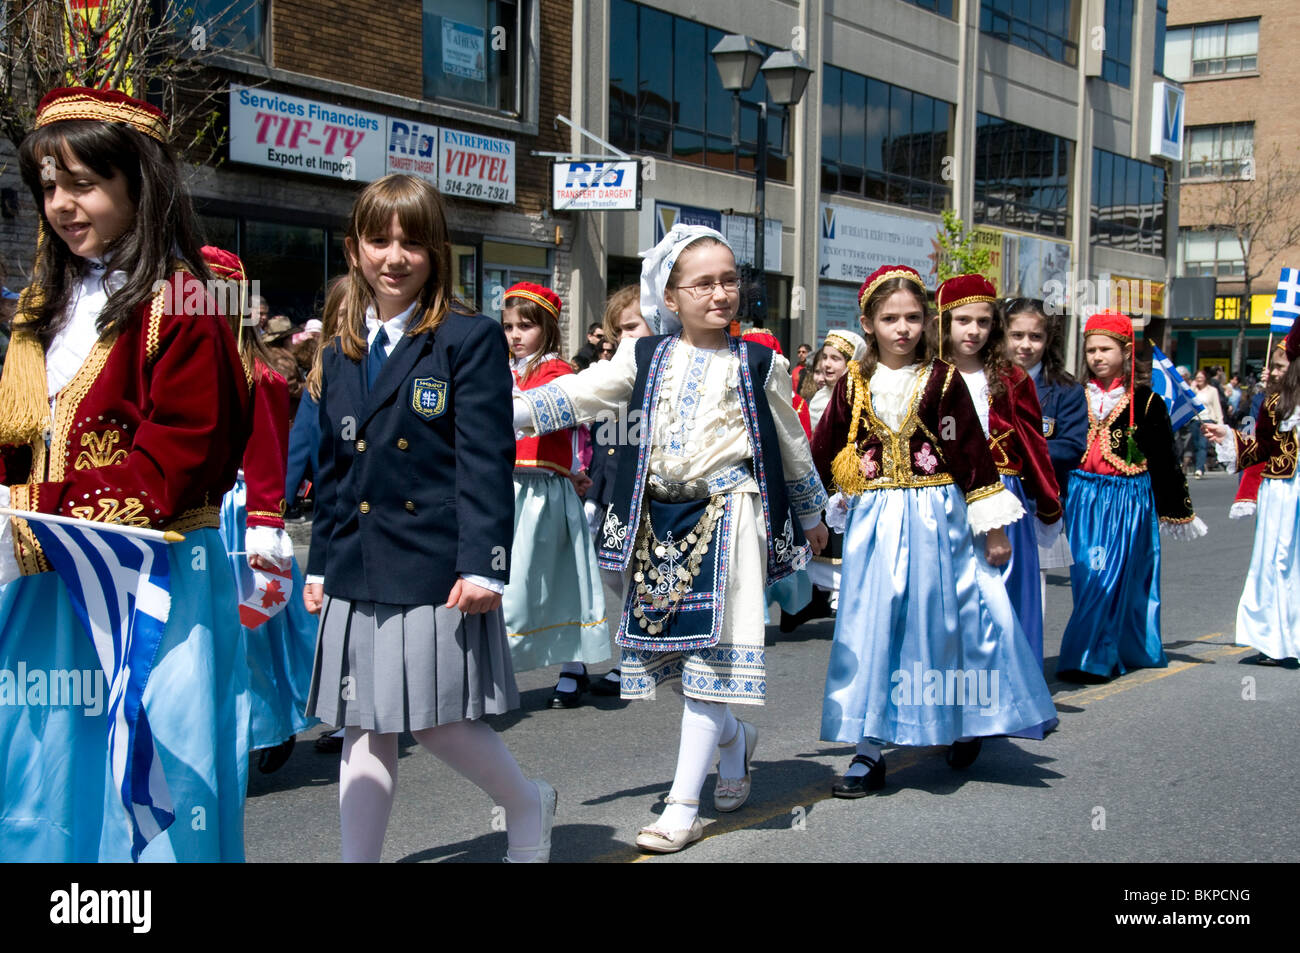 Défilé pour célébrer l'indépendance de la Grèce sur la rue Jean-Talon Montréal Canada Banque D'Images